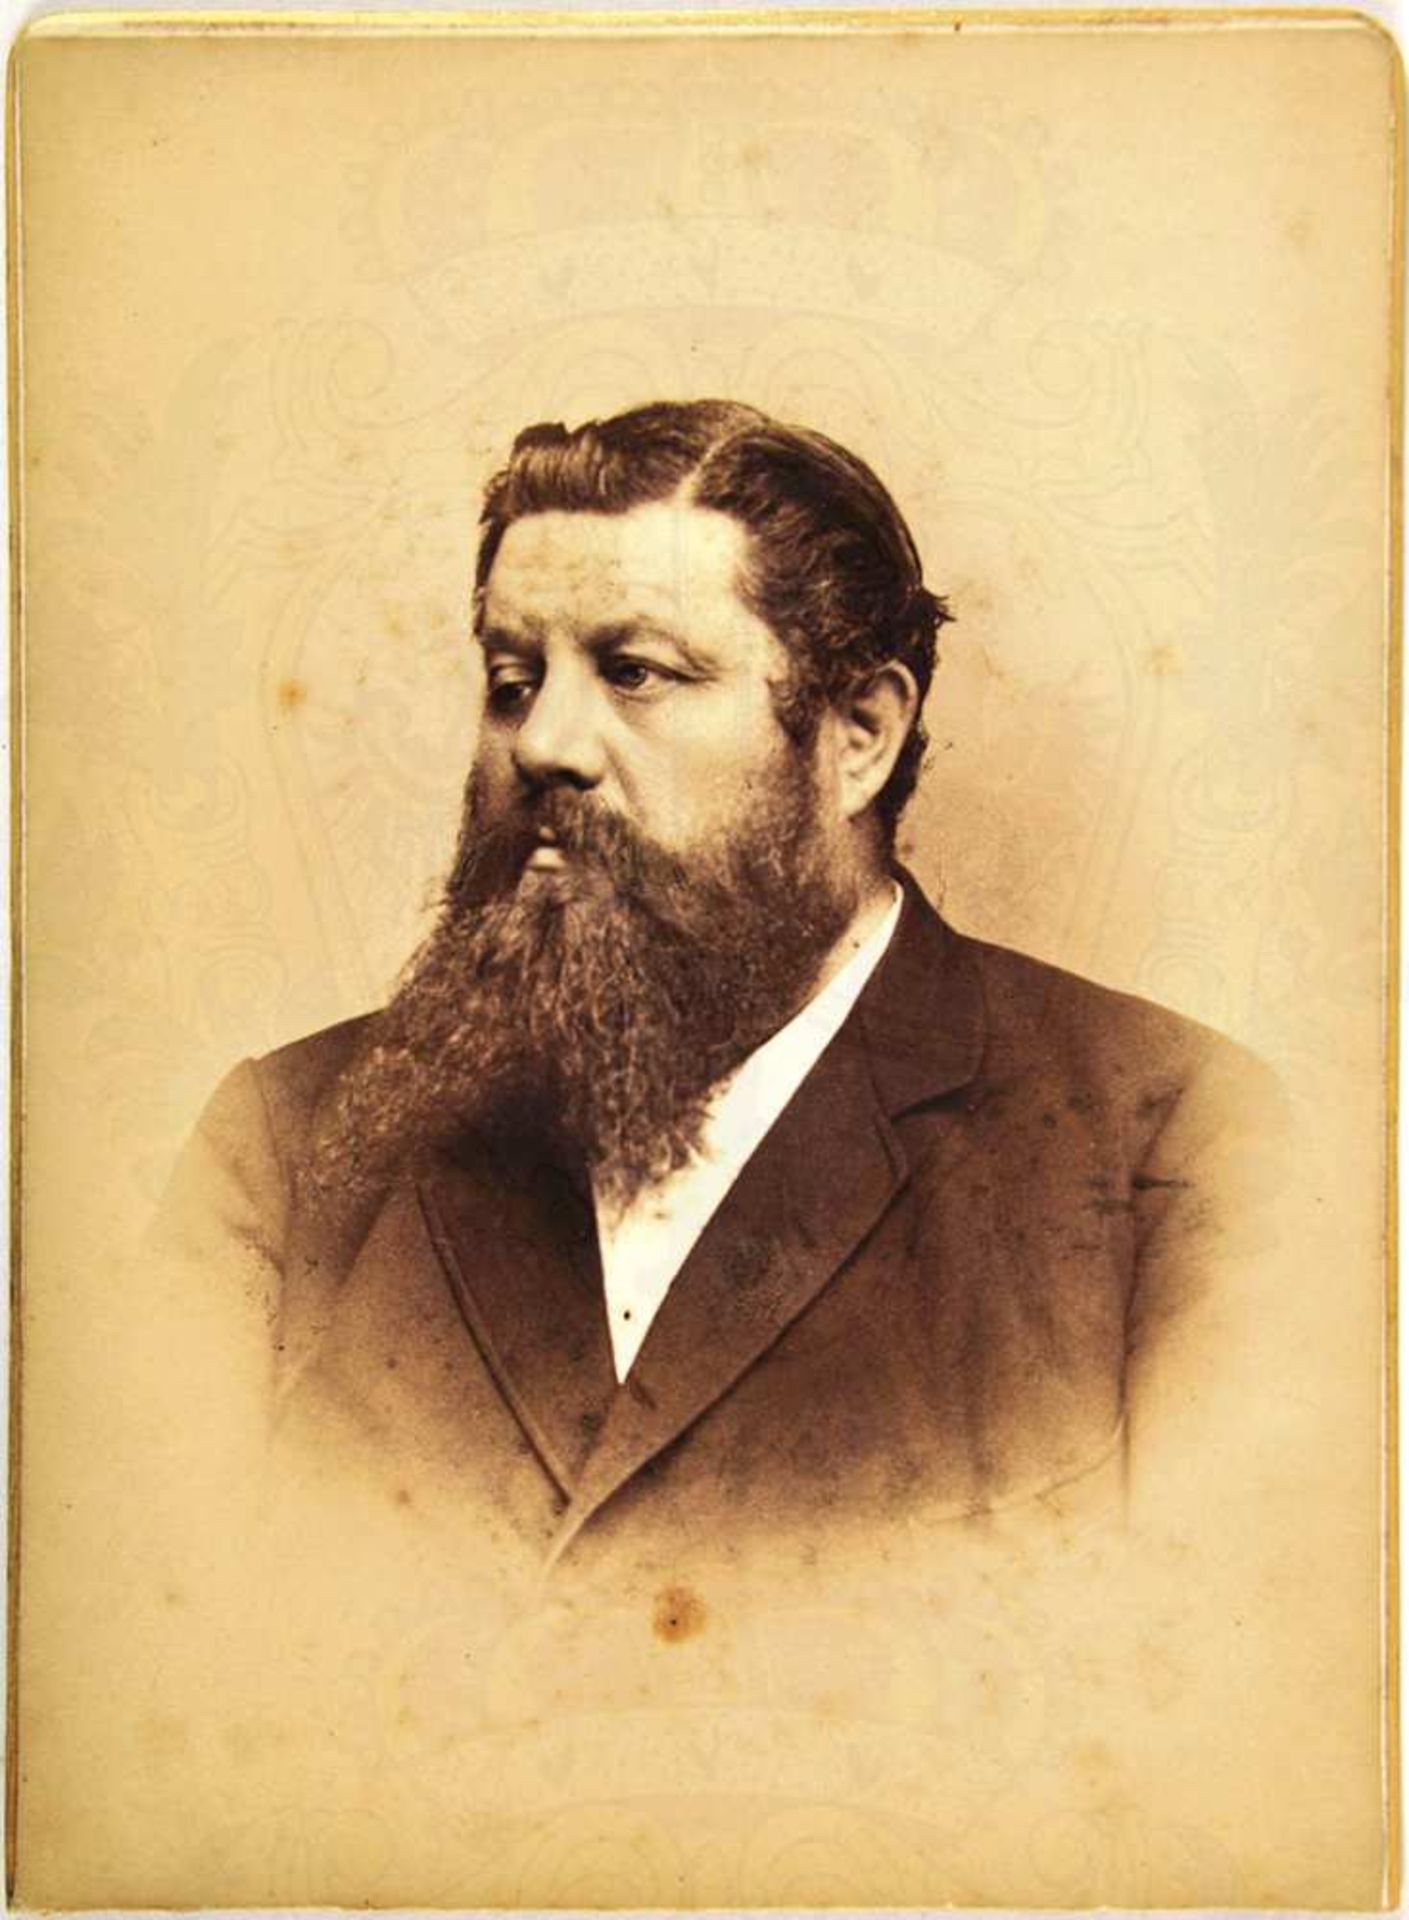 KABINETTFOTO BAUMEISTER AUGUST SEYFAHRT, Architekt, (Gotha 1836 - Kassel 1891), viele seiner